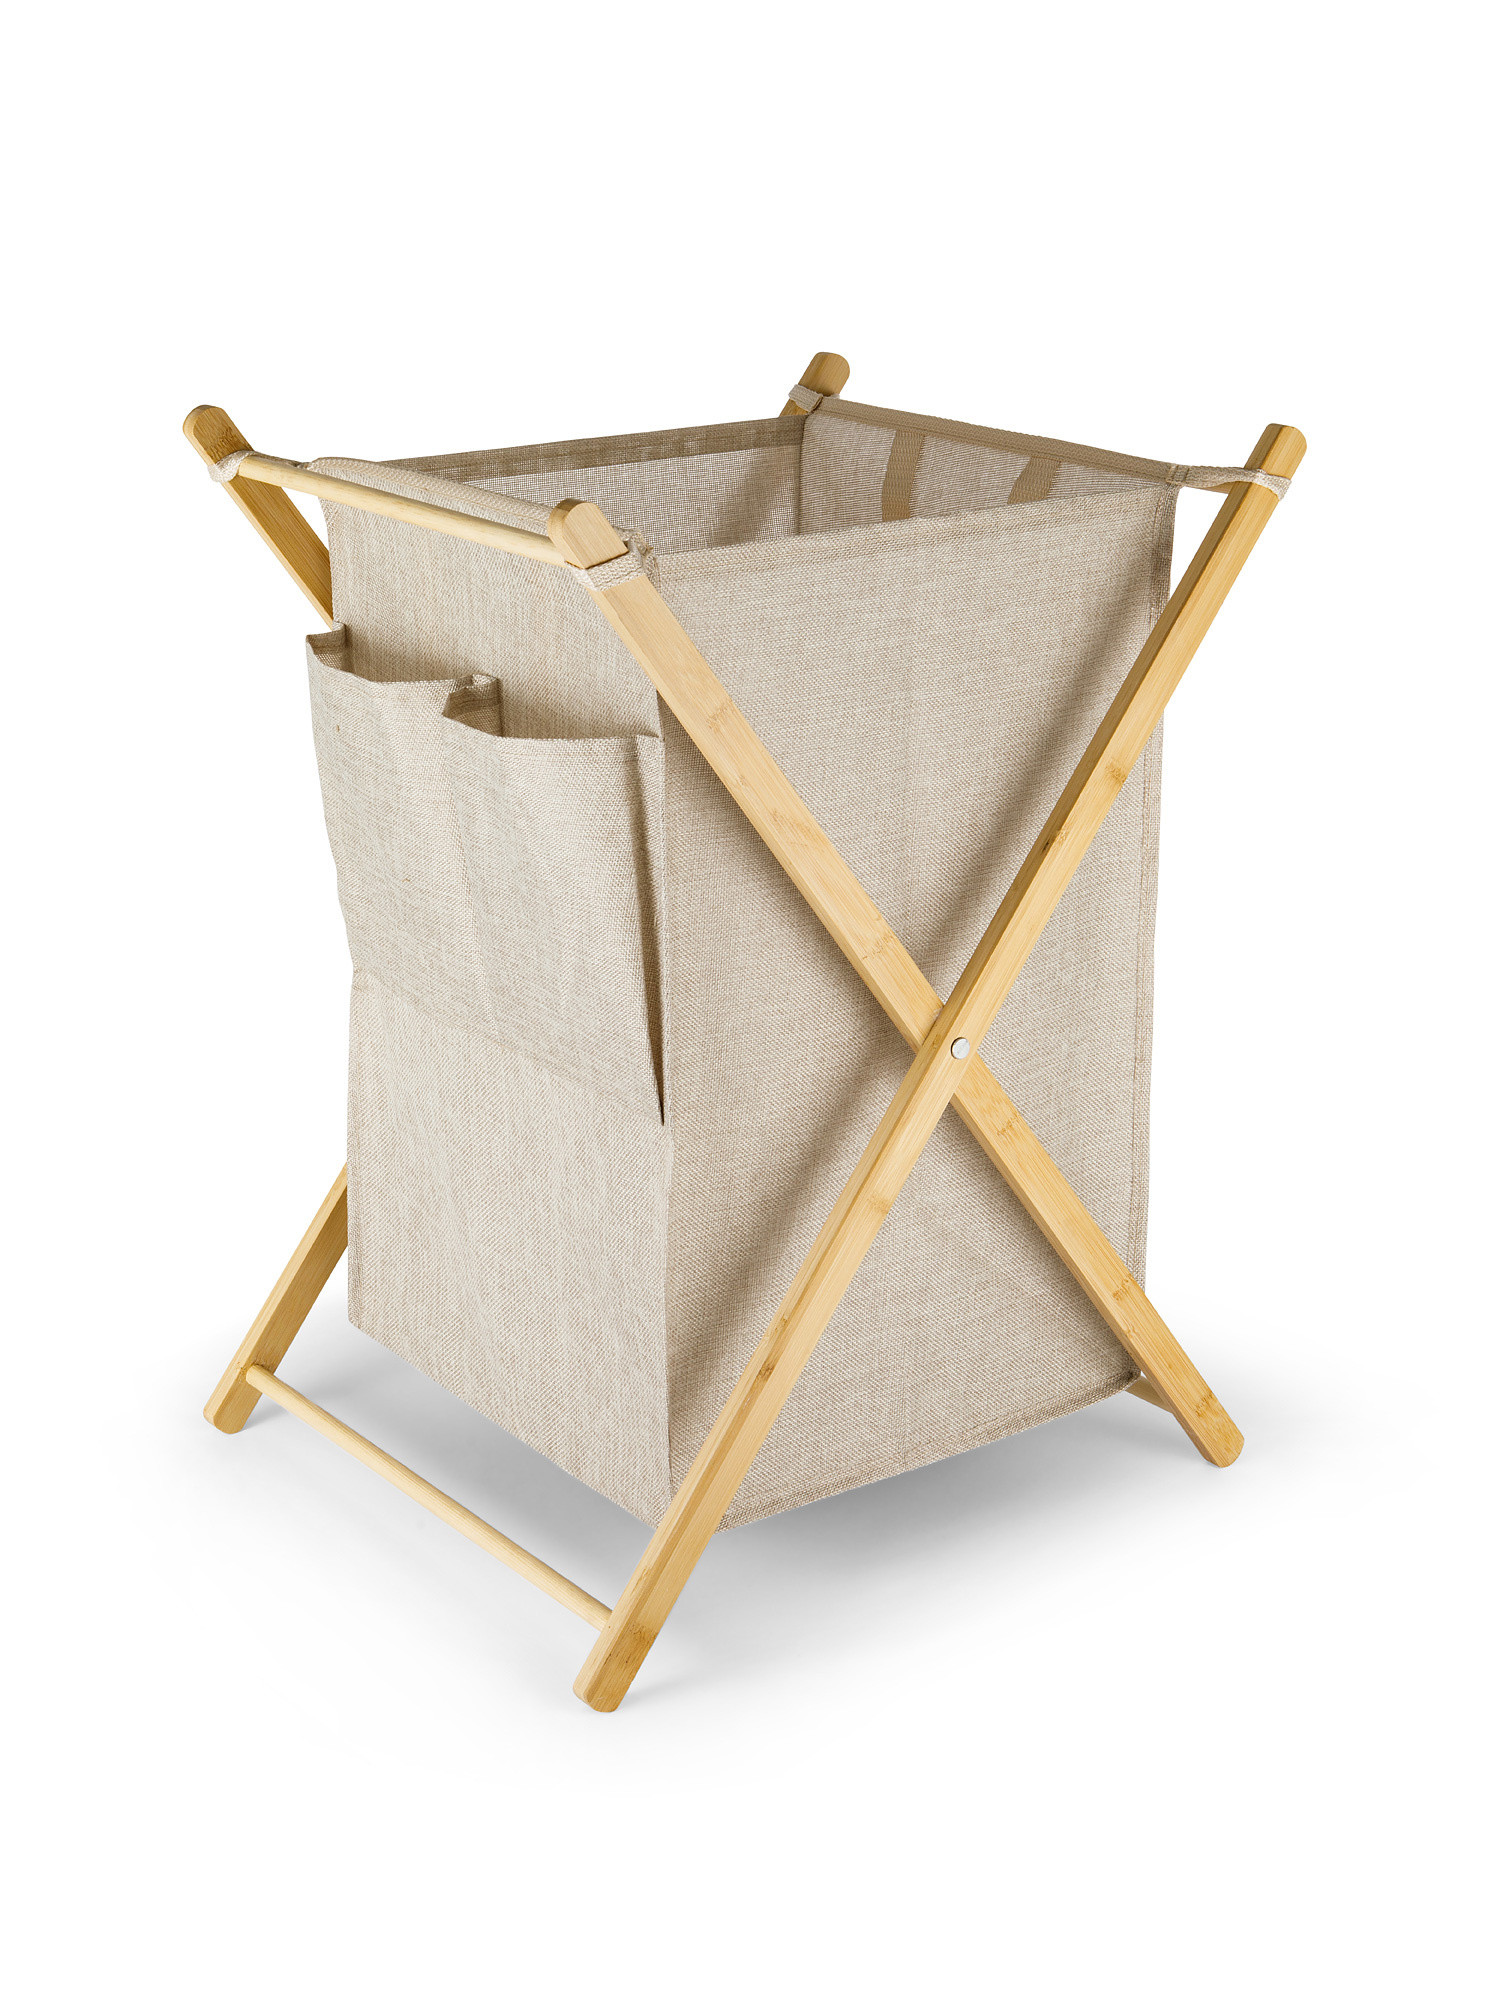 Foldable fabric laundry basket, Light Beige, large image number 0